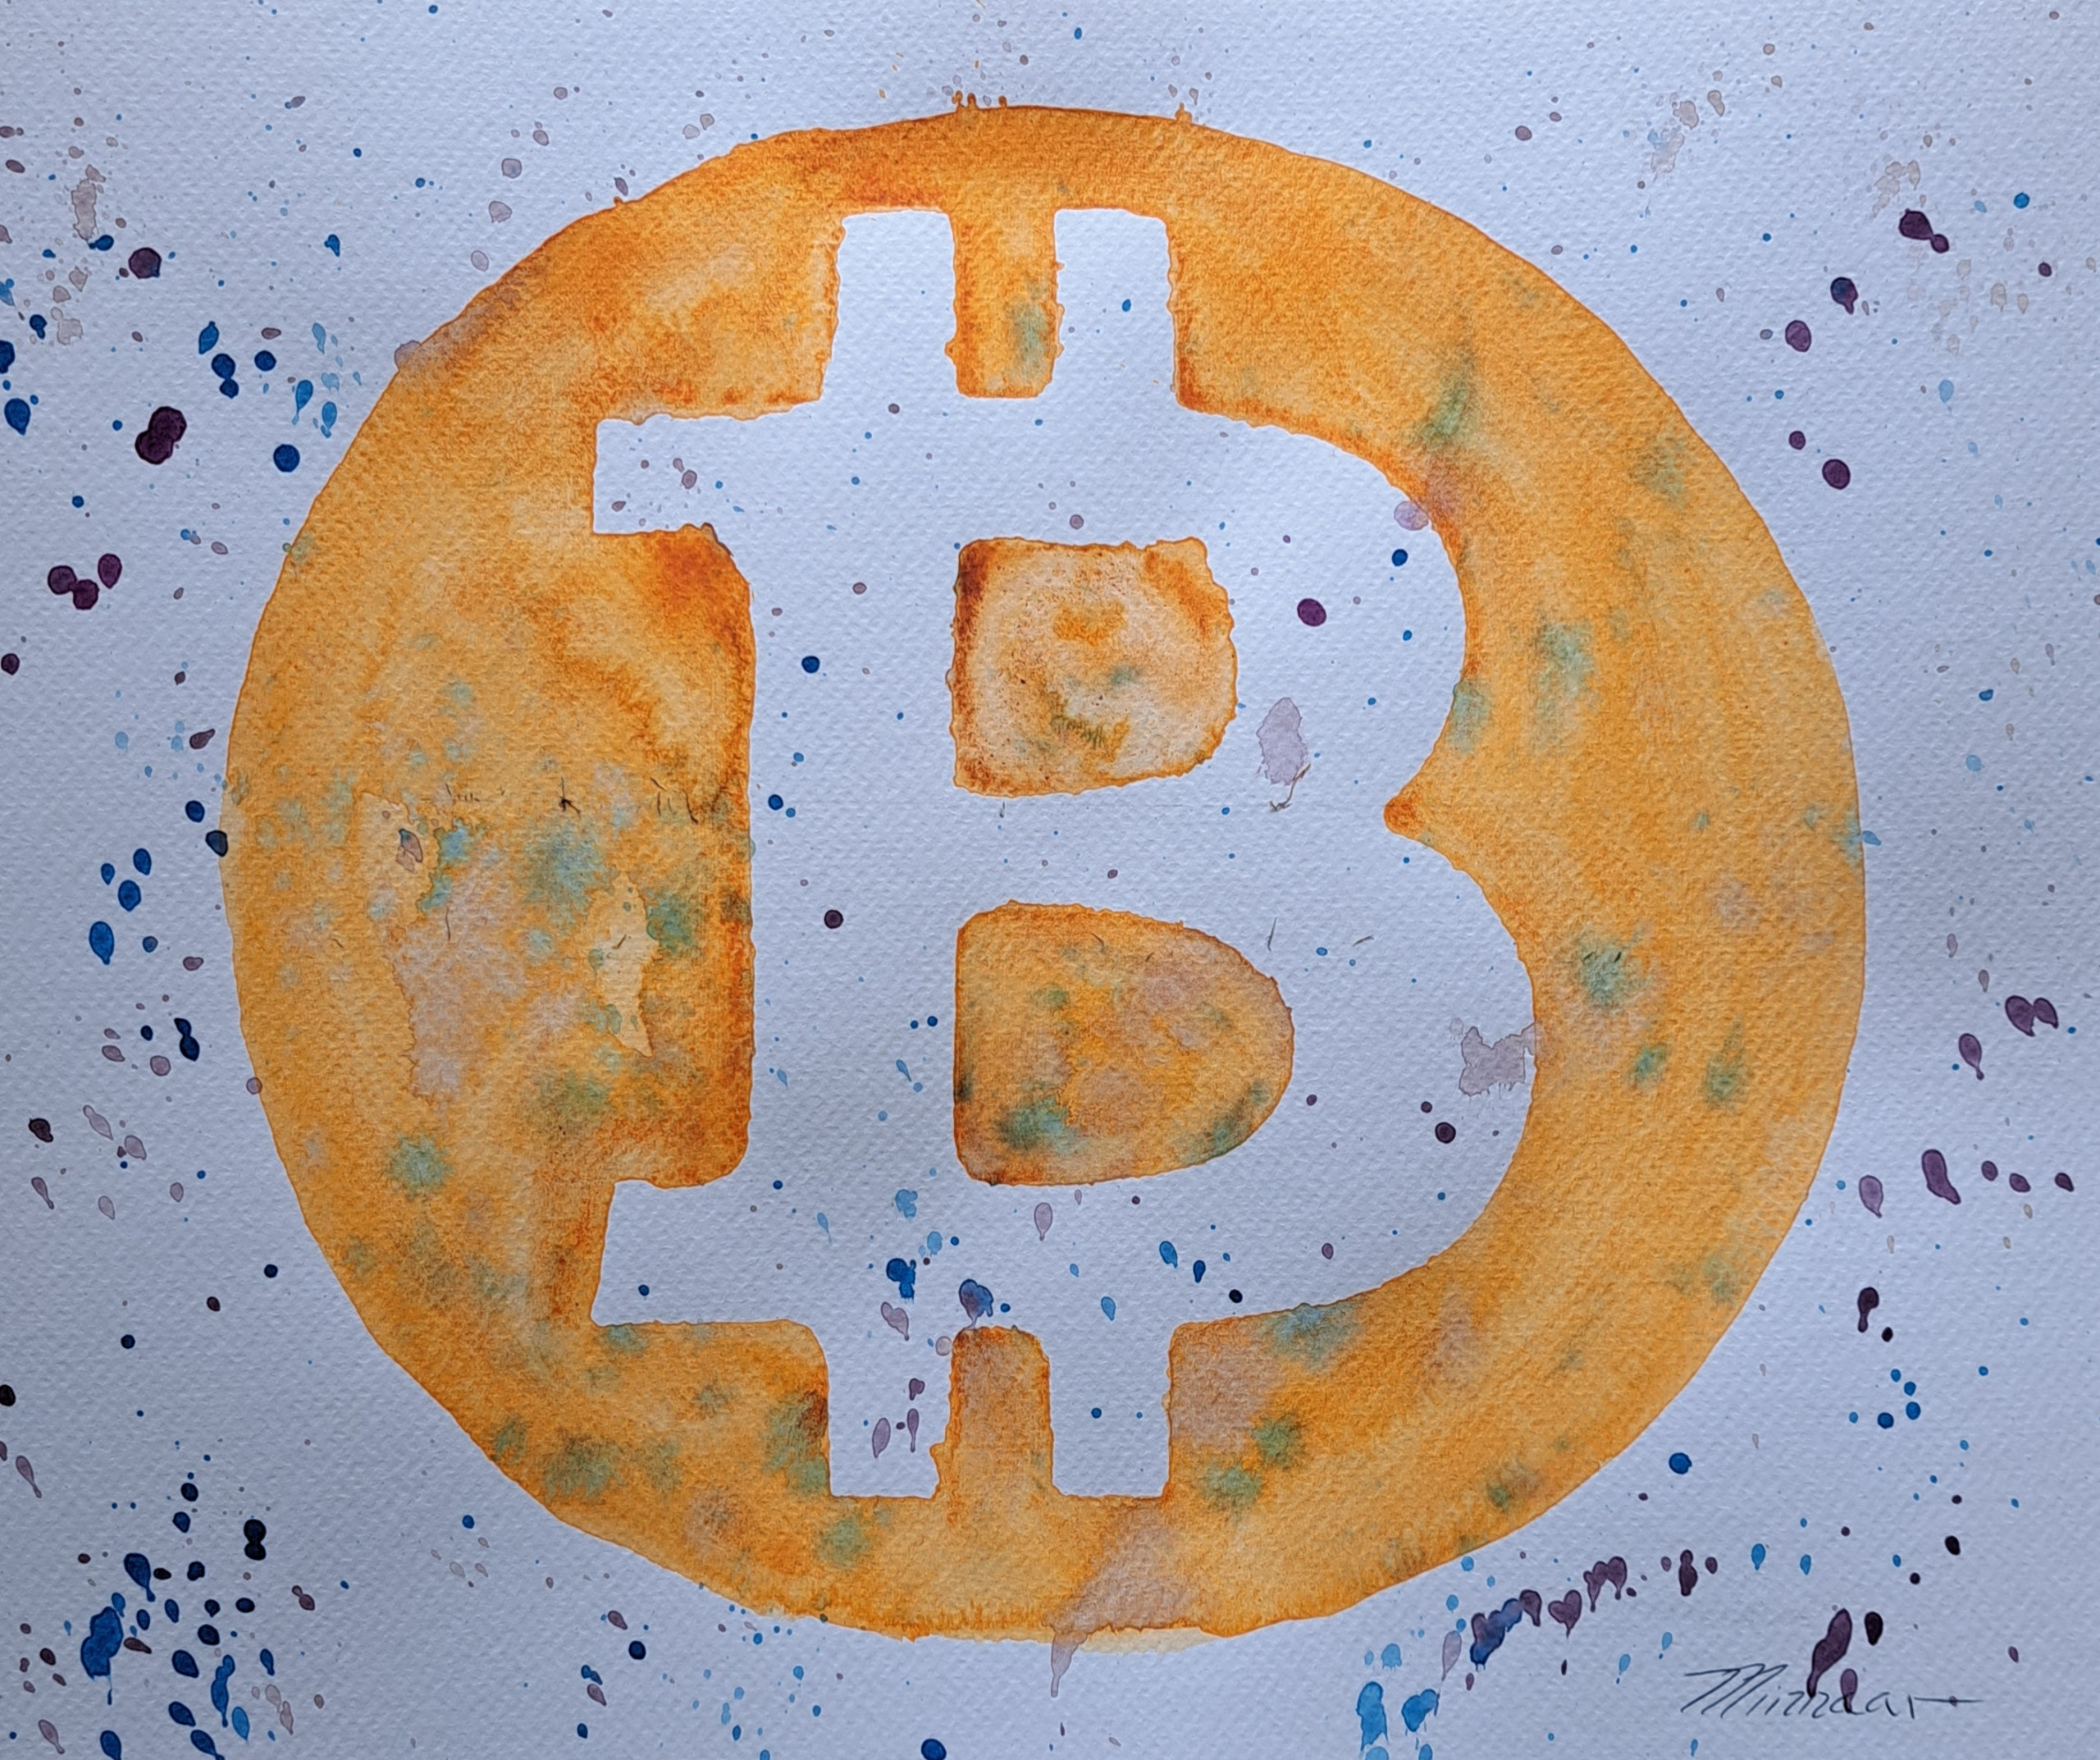 The Bitcoin Art Show